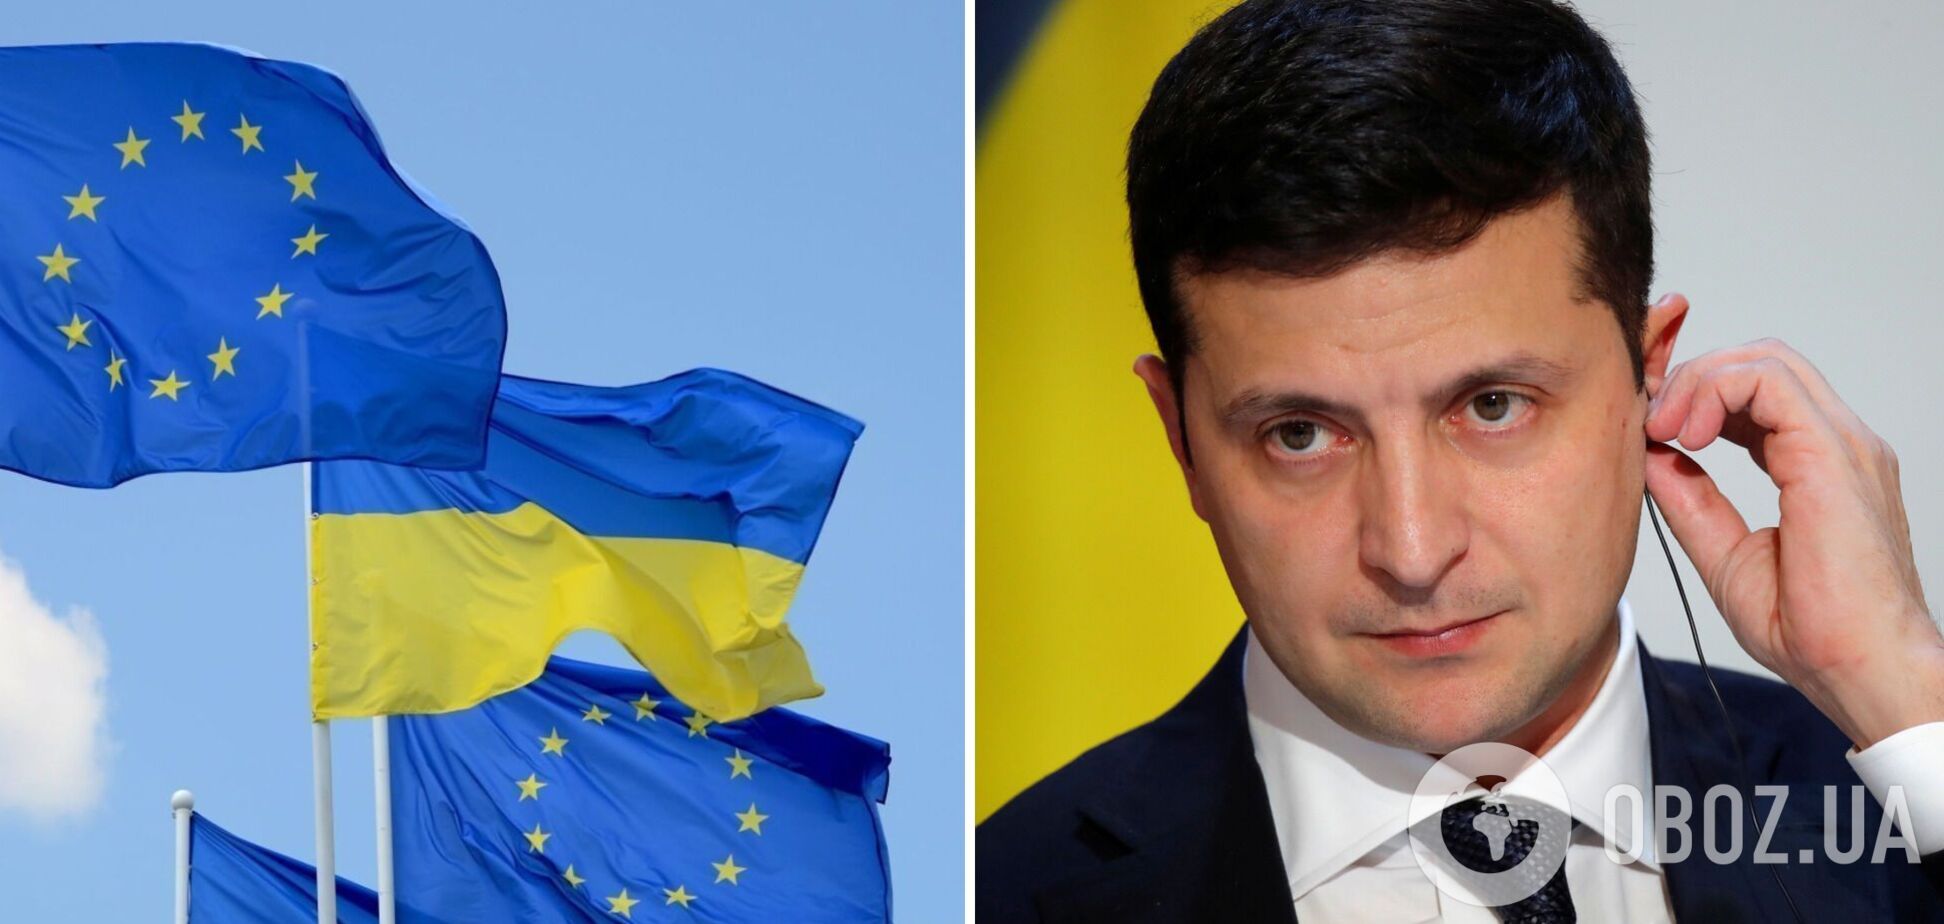 Зеленский: наступил решающий момент, чтобы принять решение о членстве Украины в ЕС